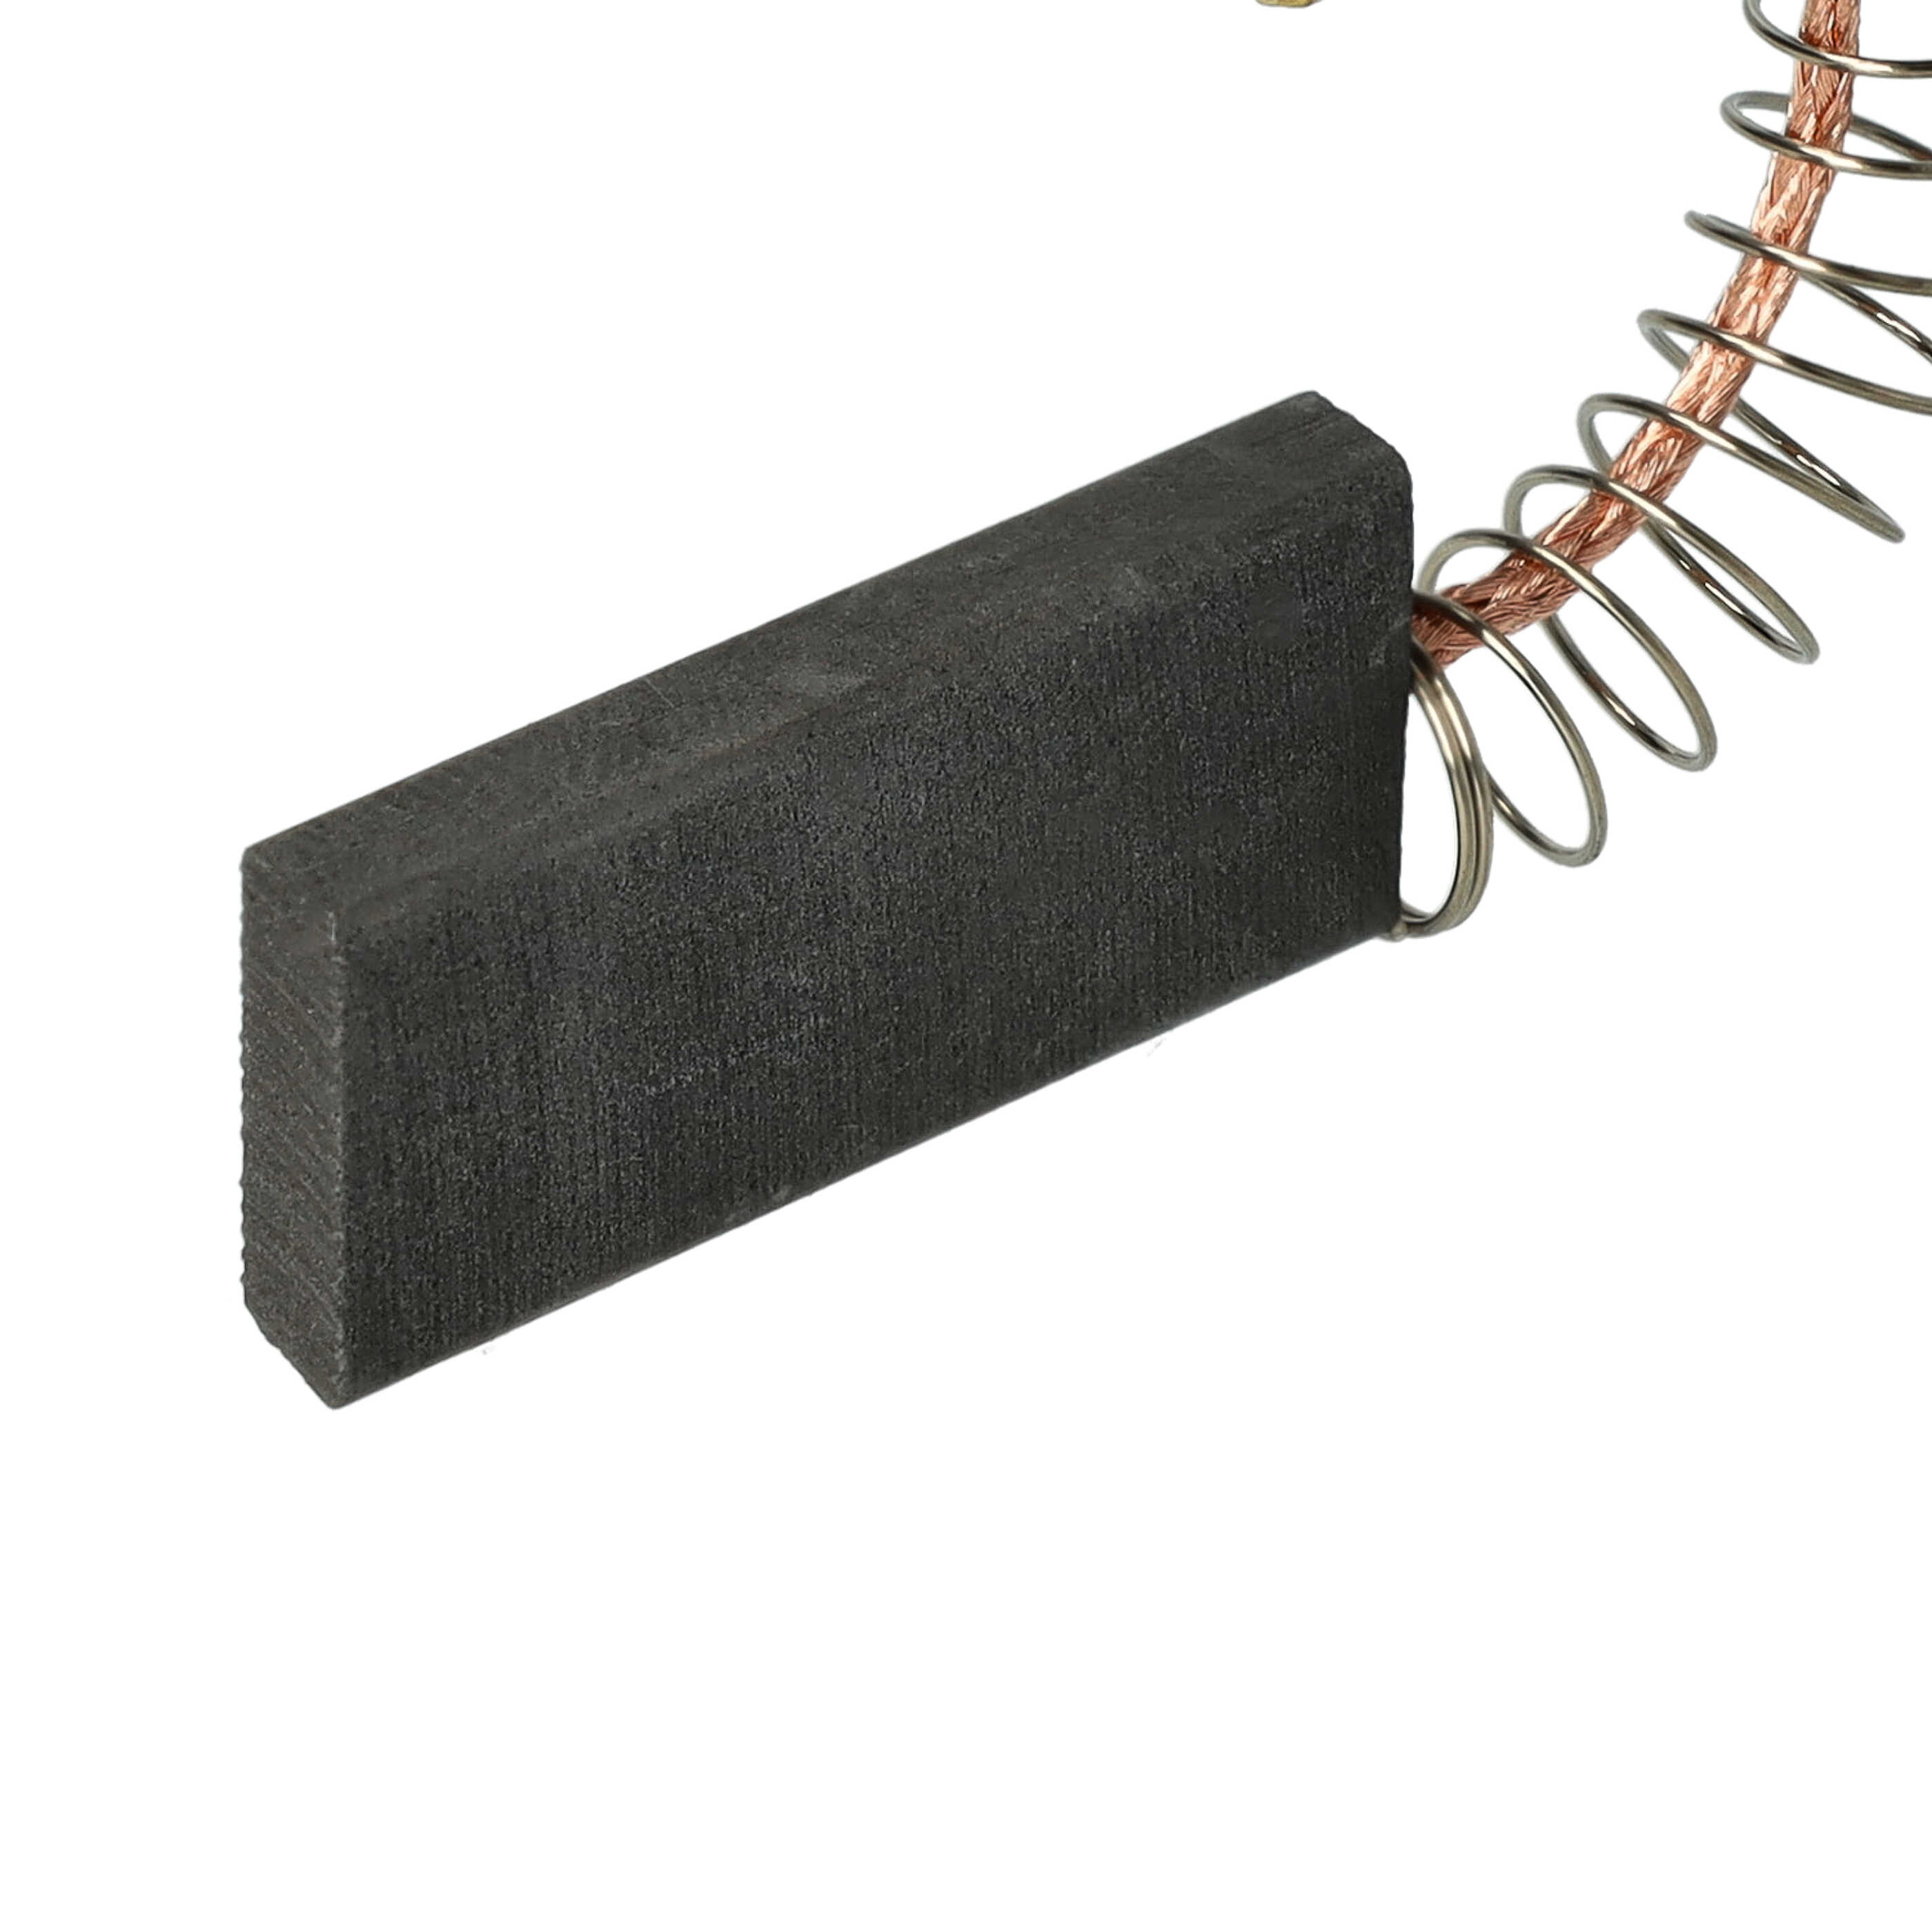 2x Spazzola carbone sostituisce Bosch 154740 per utensili + molla + manicotto spina piatta, 5 x 12 x 33 mm